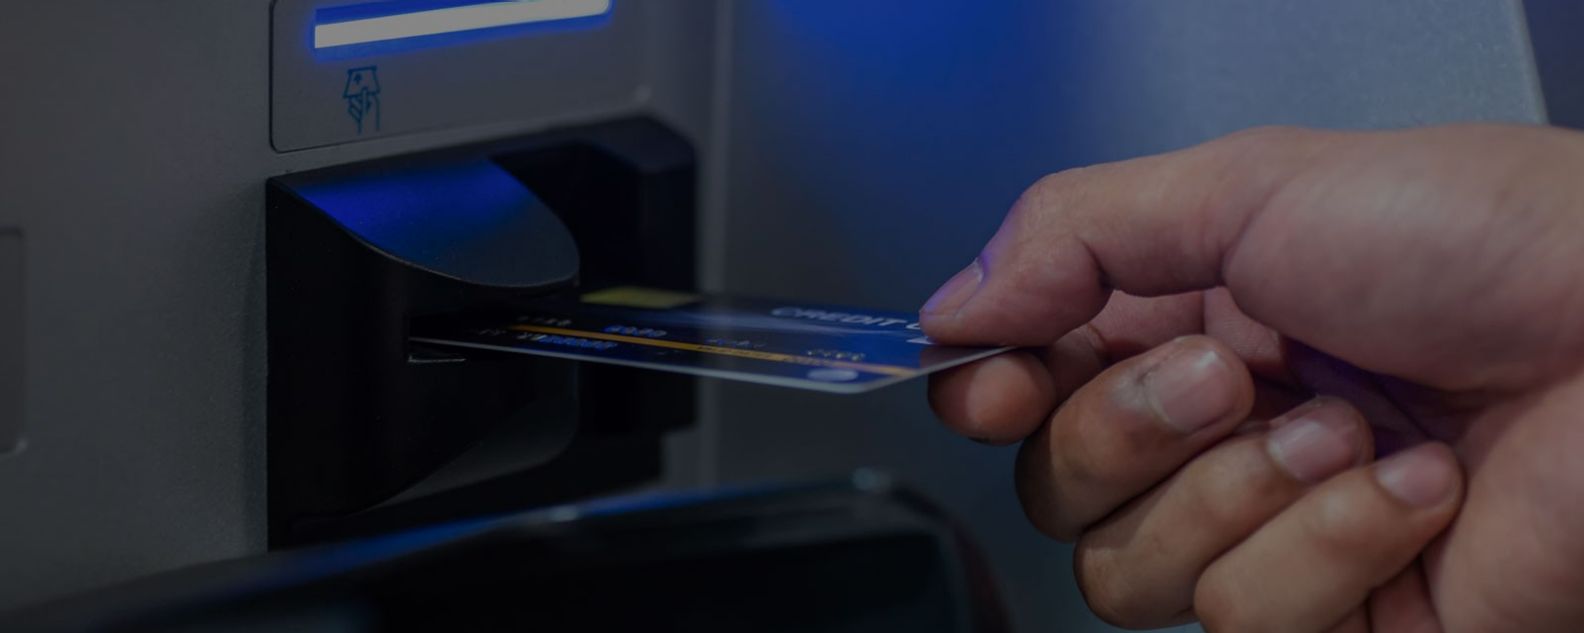 Un hombre inserta una tarjeta de débito en un cajero automático